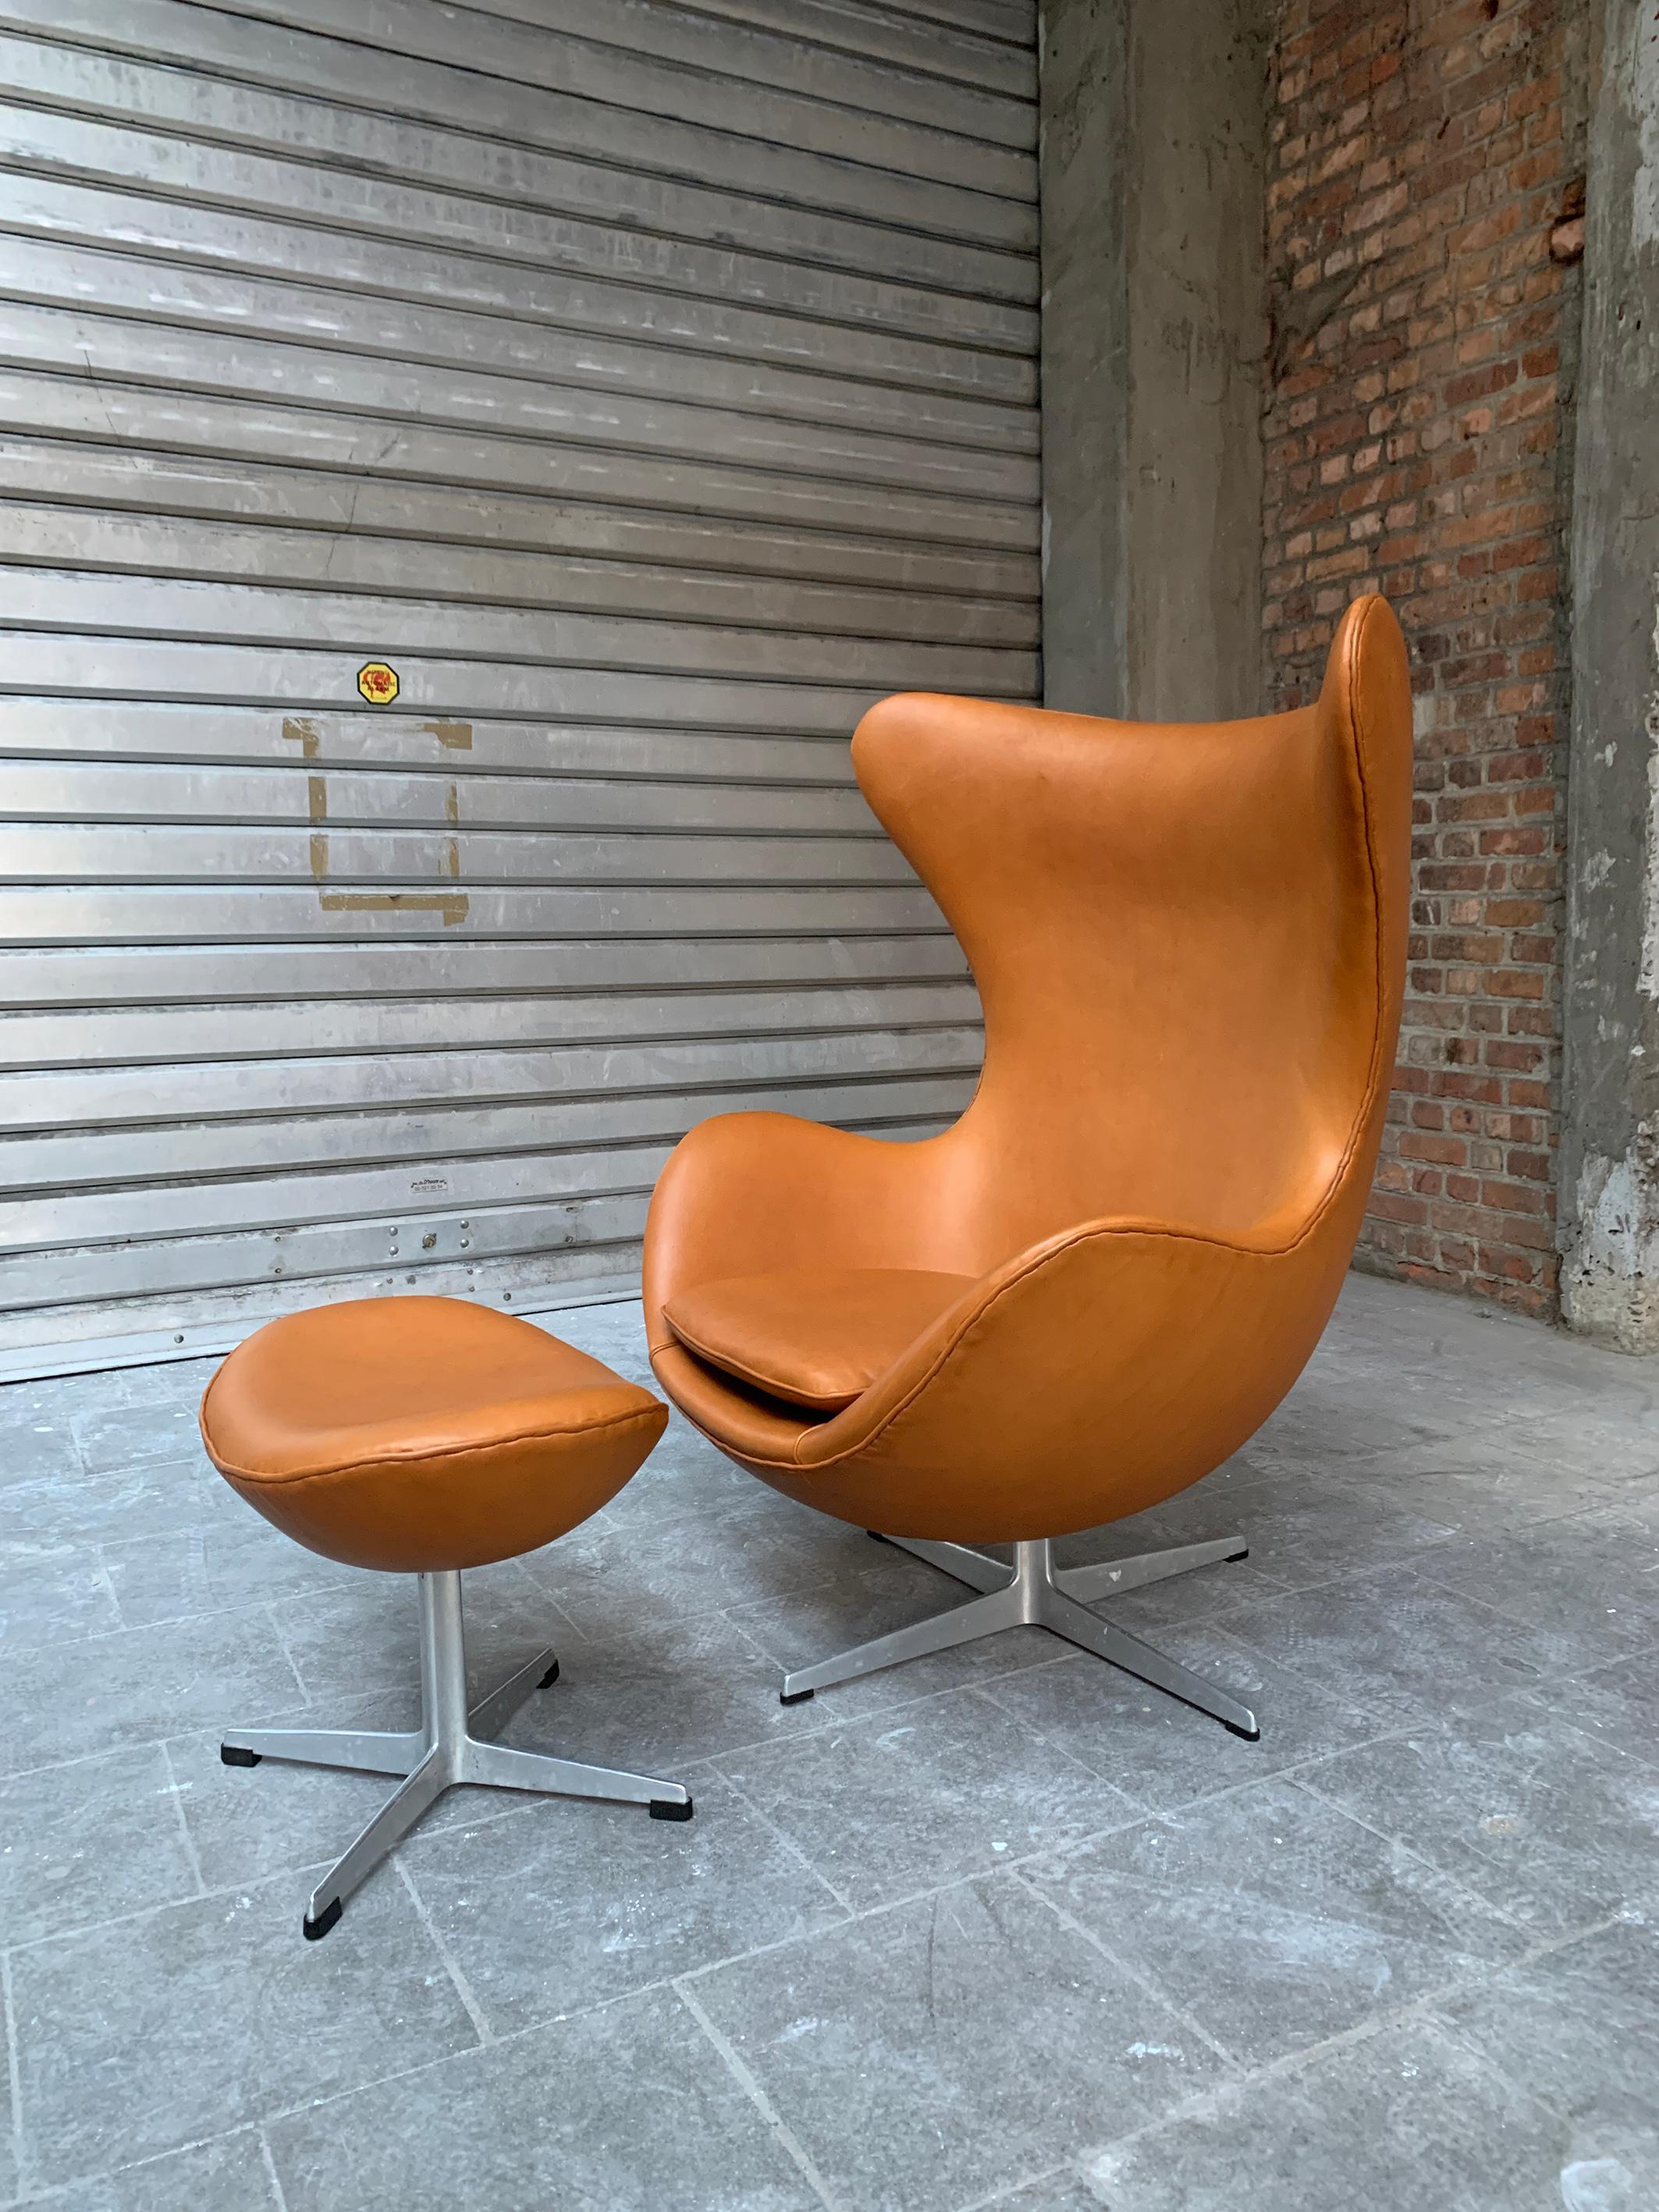 Une icône absolue du design, la chaise Egg d'Arne Jacobsen et son pouf produits en 1966. 

Nouvellement retapissé en cuir Nappa européen en utilisant les techniques d'origine. Cela signifie que les passepoils en cuir sont cousus à la main tout